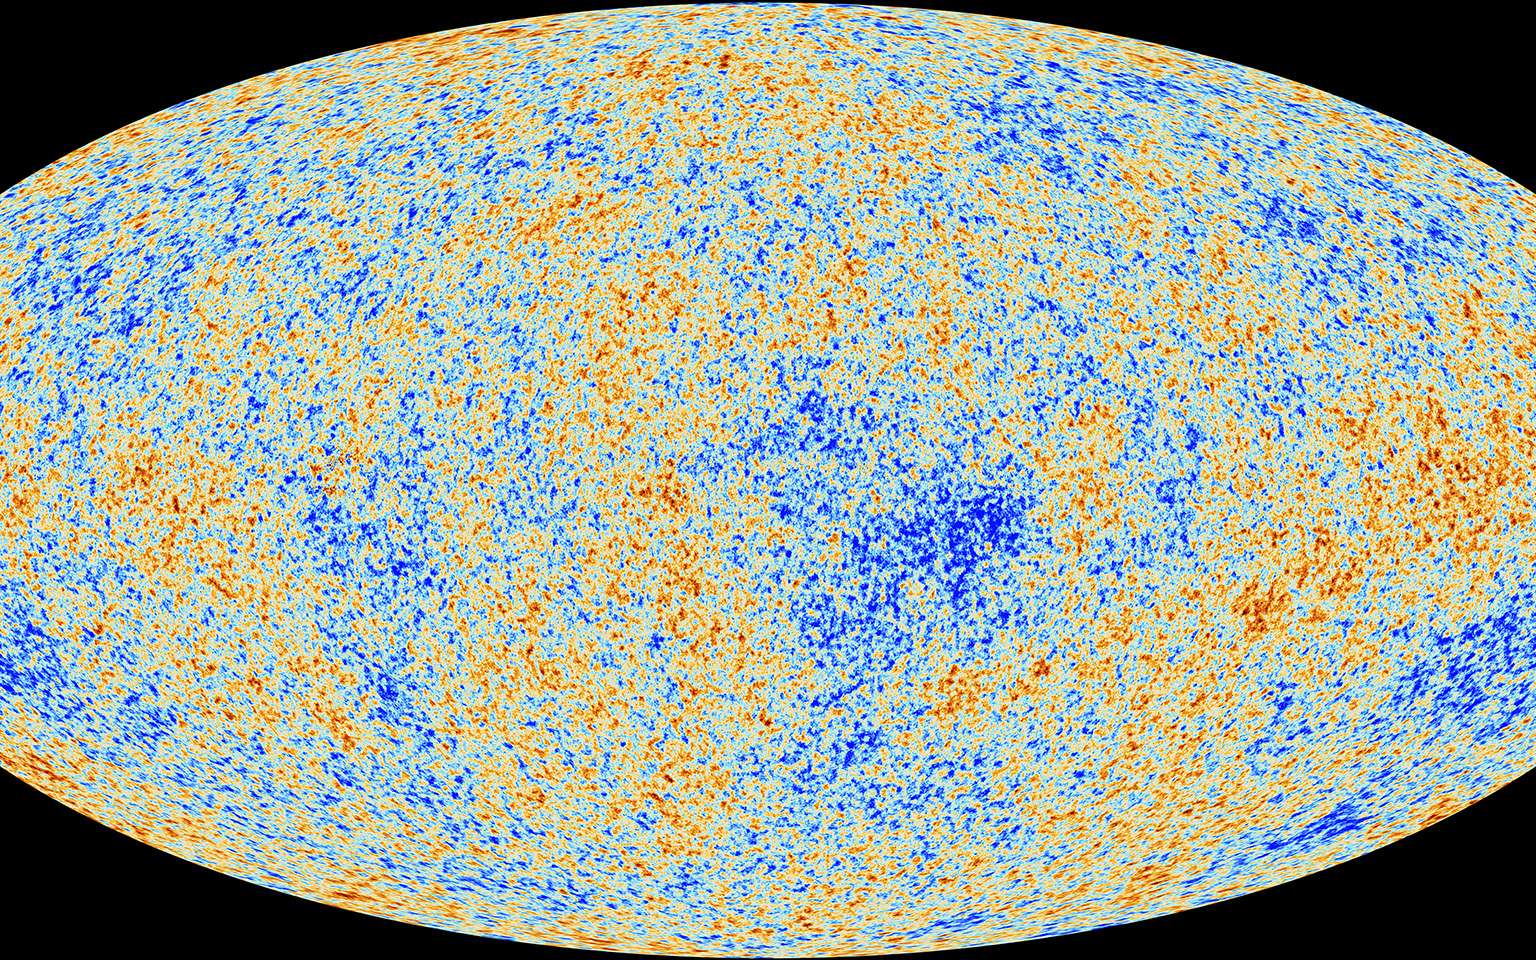 Sur la base de données transmises par le satellite Planck, des astronomes européens imaginent aujourd’hui que notre univers n’est pas plat, mais fermé, en forme de sphère. © ESA